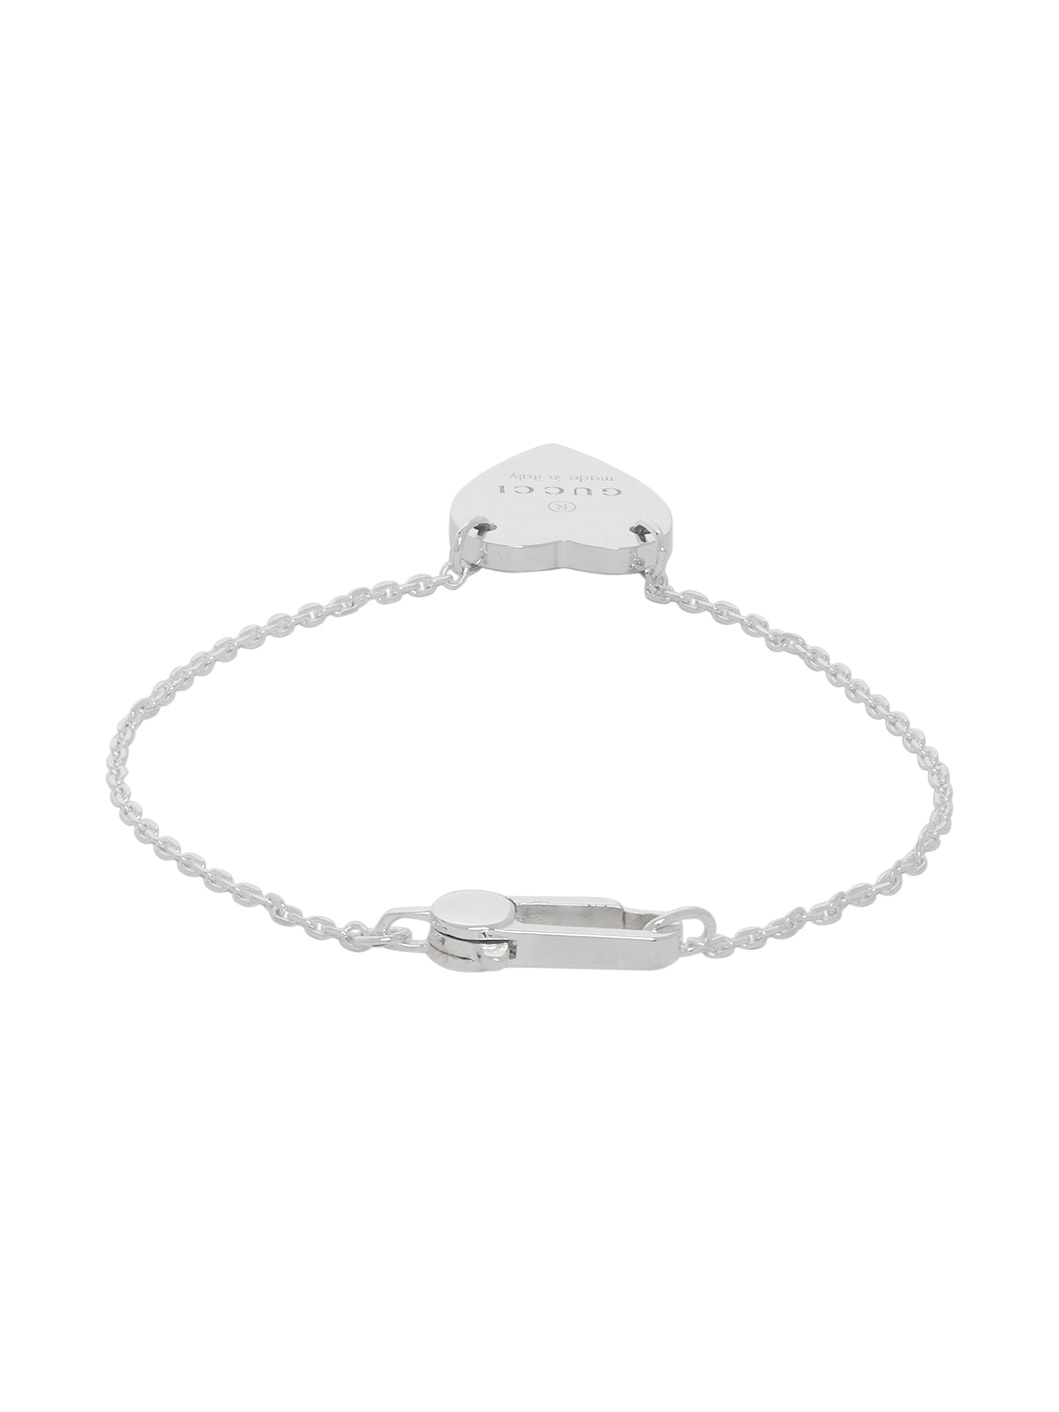 Silver Trademark Heart Bracelet - 4